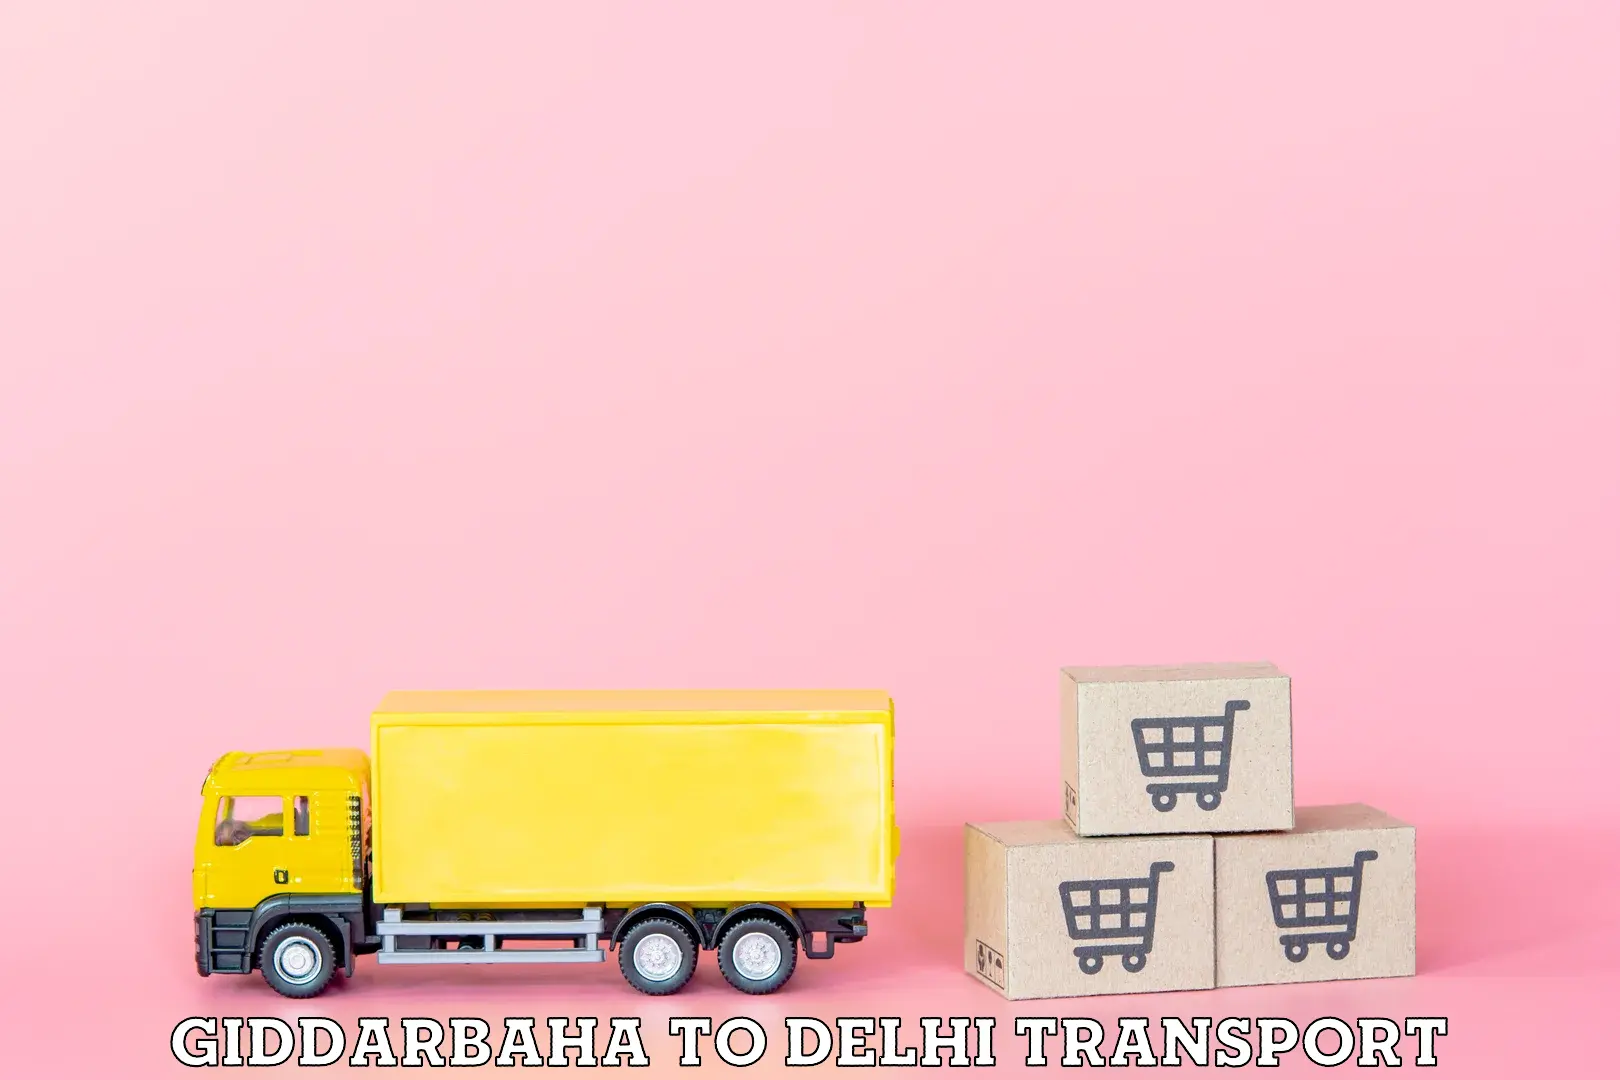 Transport in sharing Giddarbaha to East Delhi